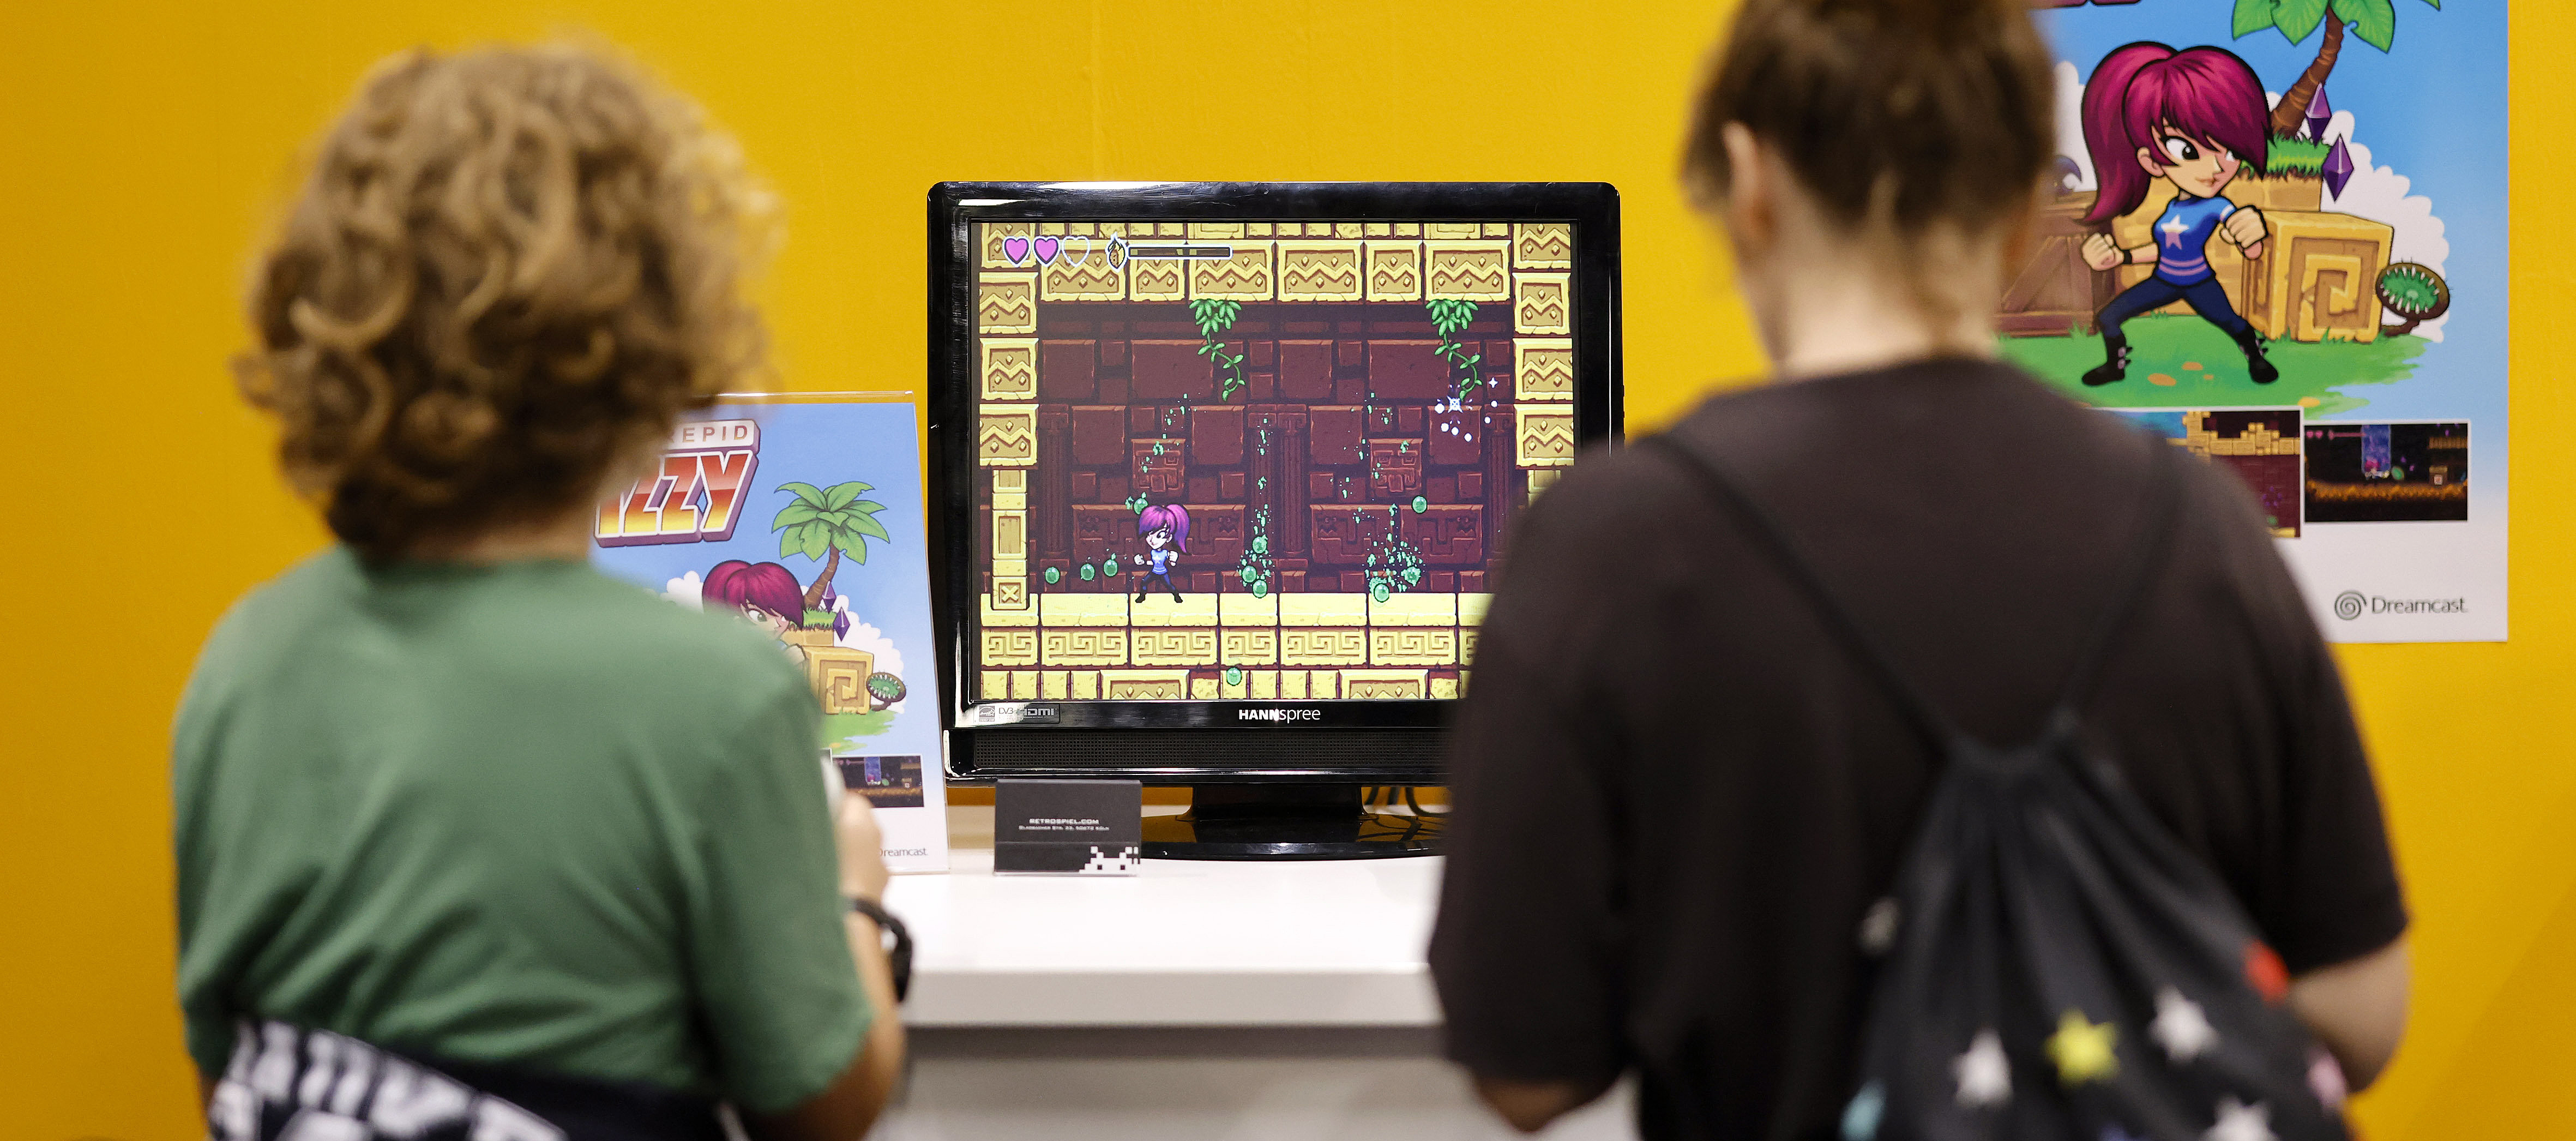 Zwei Jugendliche spielen ein Videospiel. Sie sind unscharf vor einem Schreibtisch vor einem orangefarbenen Hintergrund zu sehen. Zwei Plakate des Spiels sind zu erkennen, auf denen jeweils Protagonistin des Spiels (Eine weiblich gelesene Figure mit Pferdeschwanz) zu sehen ist. 